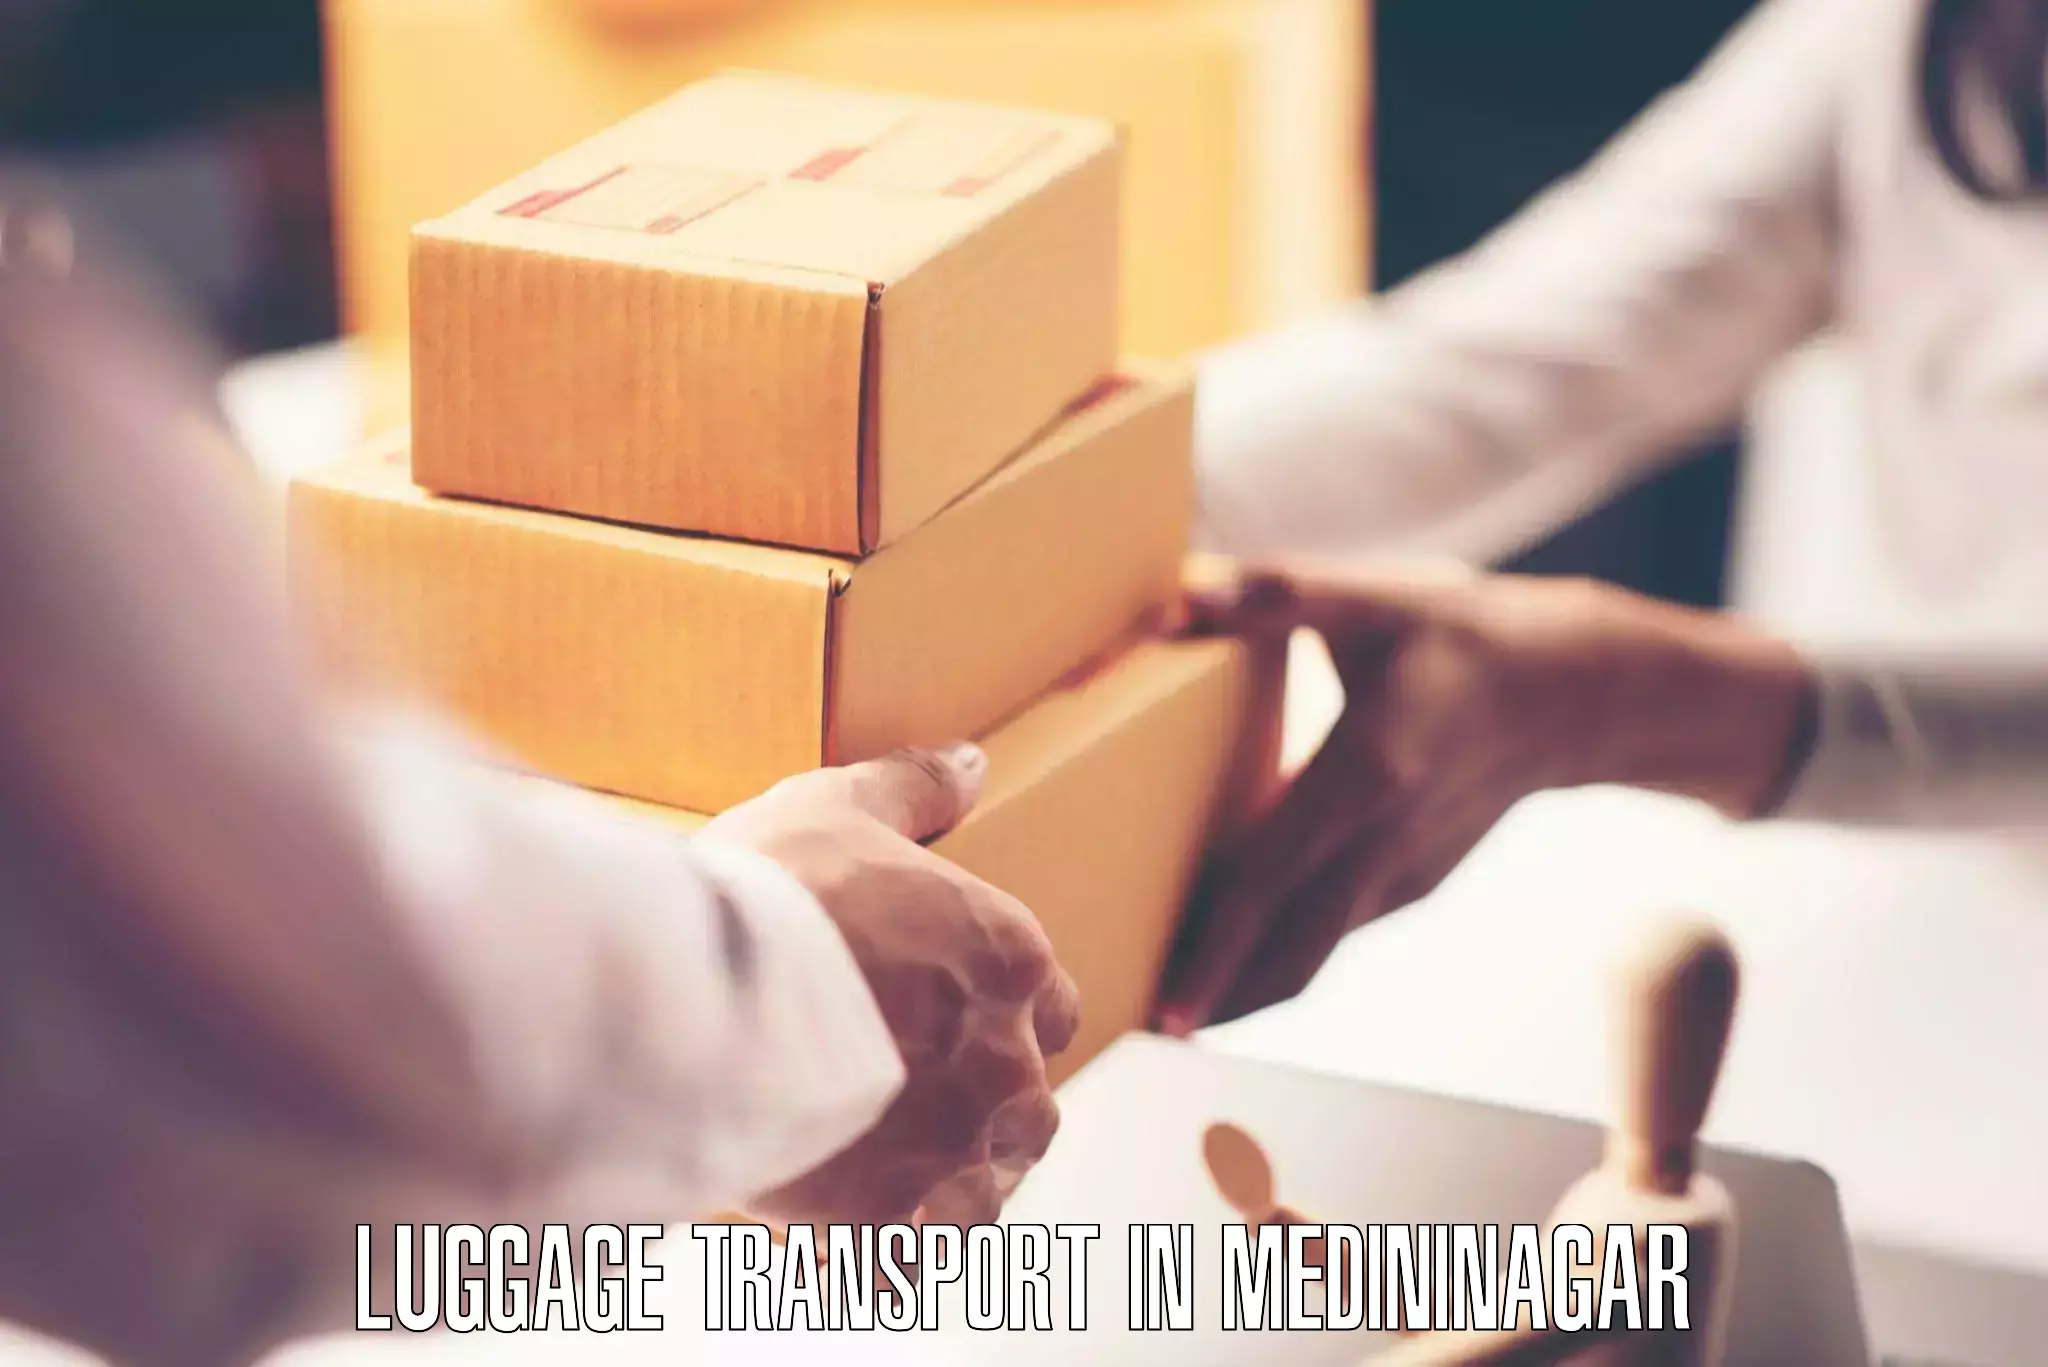 Luggage delivery rates in Medininagar